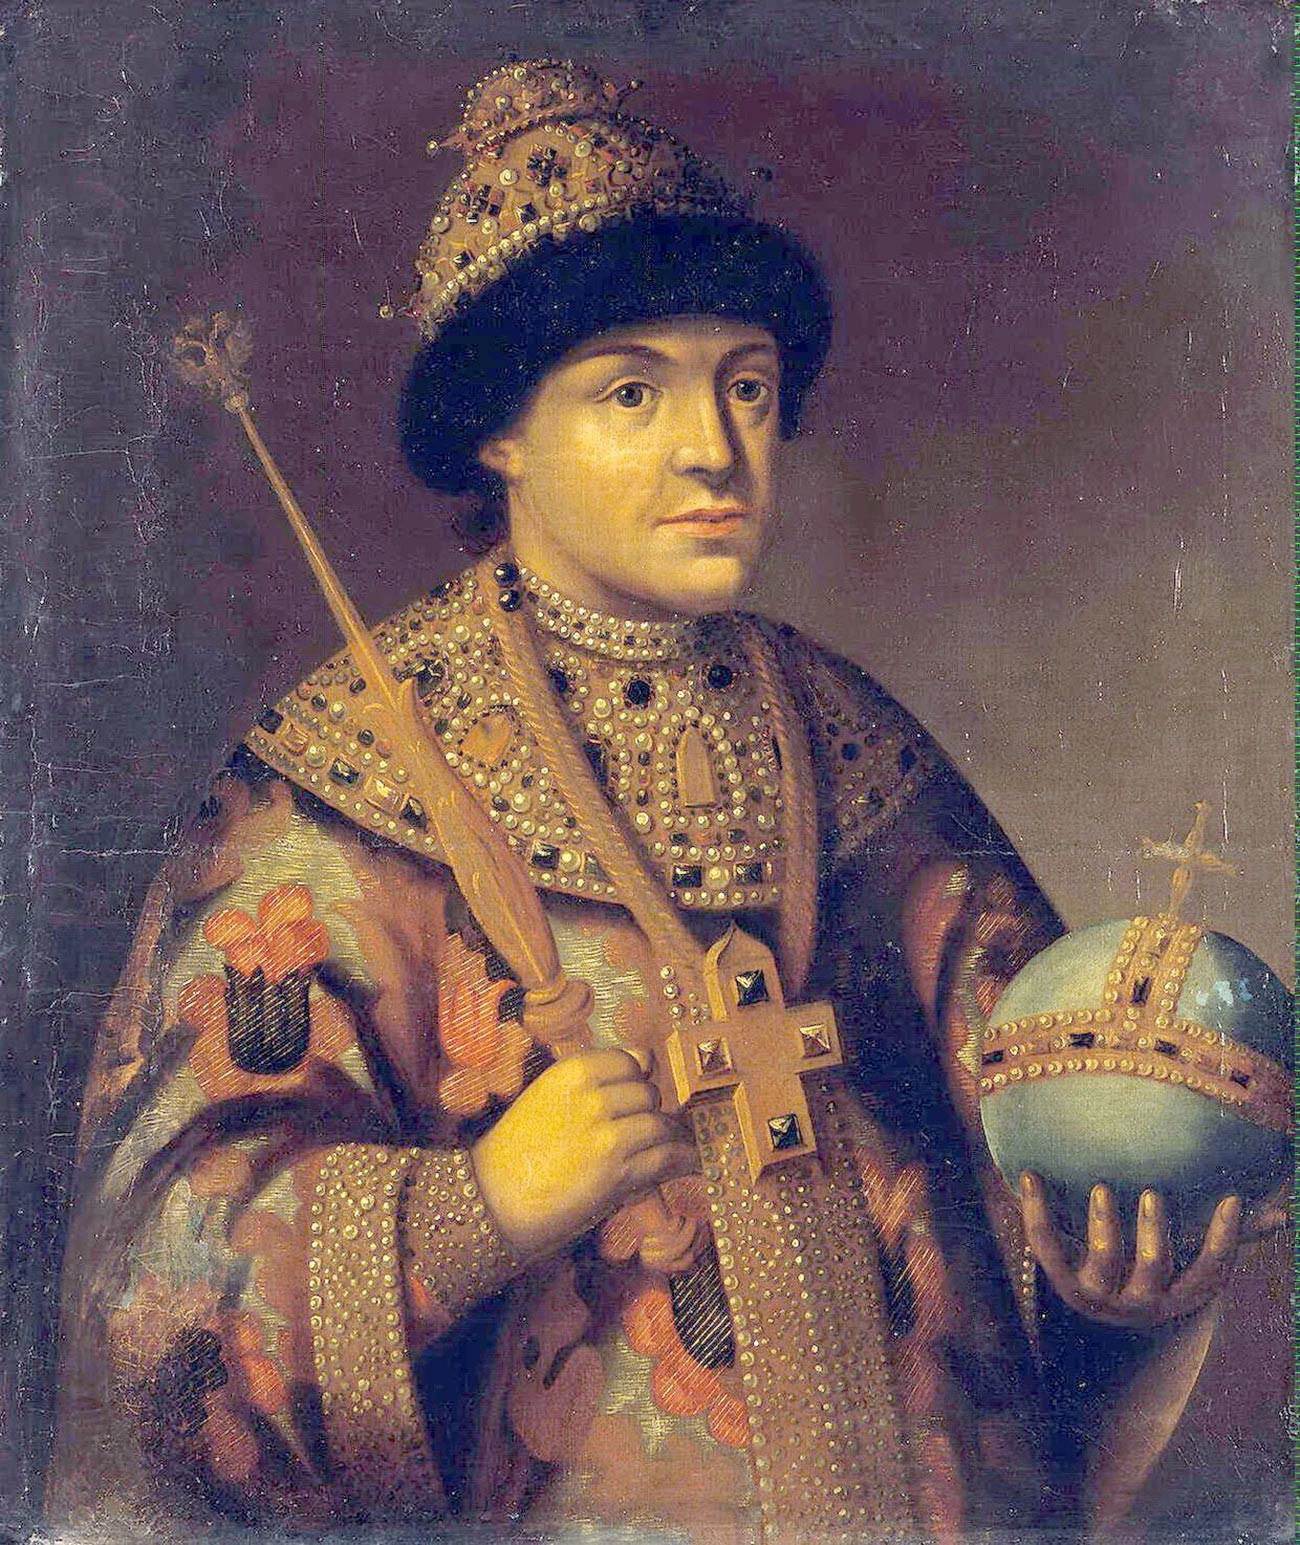 Lo zar Fyodor Alekseyevich (1661-1682). Suo fratello minore Ivan (1666-1696) soffriva probabilmente di disturbi mentali